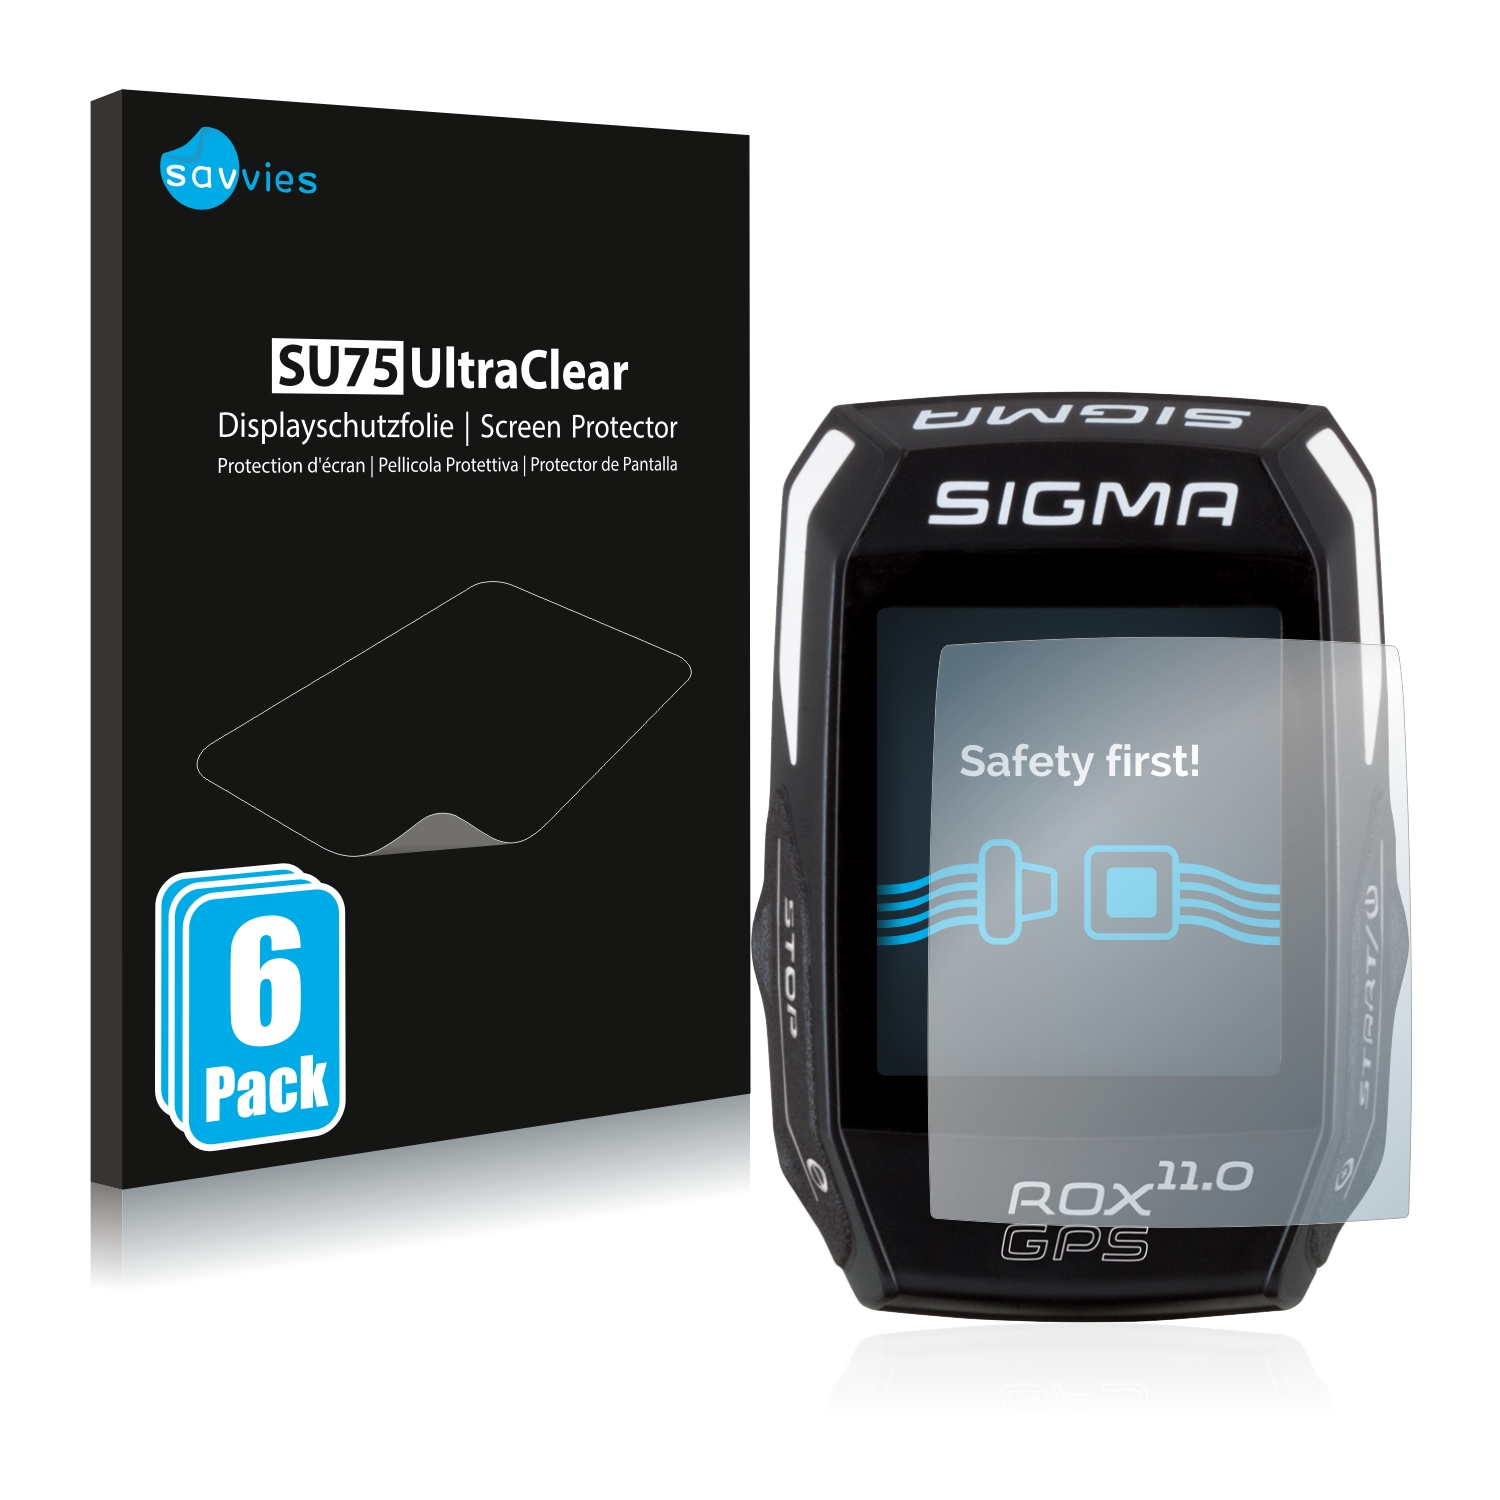 moeilijk Burgerschap besluiten 6x Savvies SU75 Screen Protector for Sigma ROX GPS 11.0 |  protectionfilms24.com